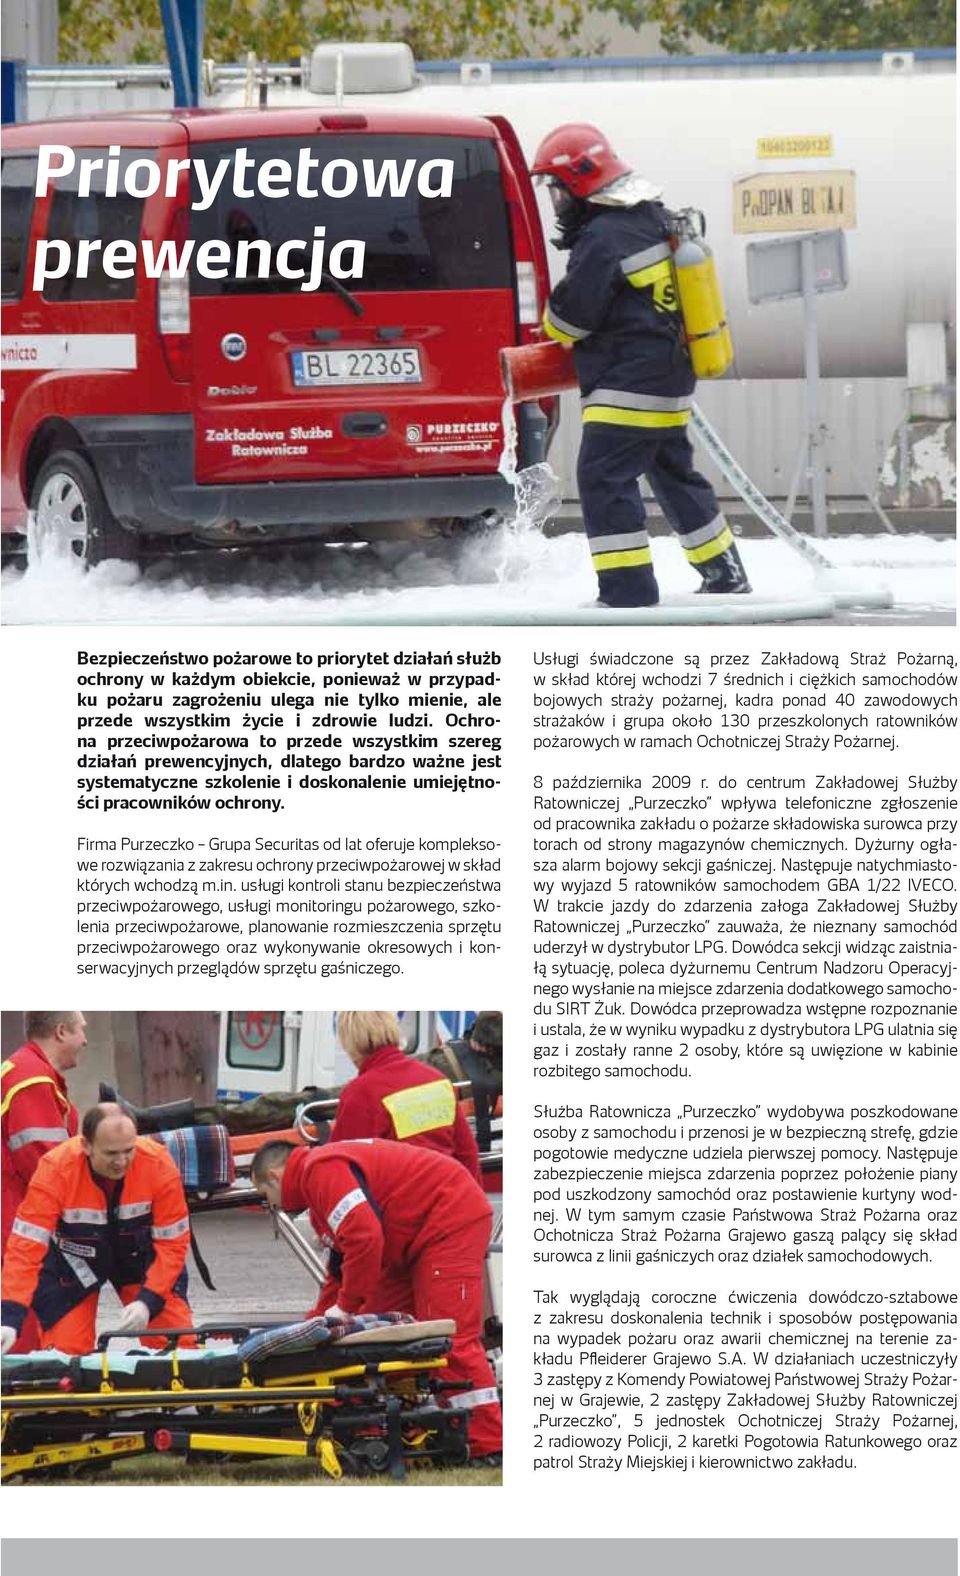 Firma Purzeczko Grupa Securitas od lat oferuje kompleksowe rozwiązania z zakresu ochrony przeciwpożarowej w skład których wchodzą m.in.